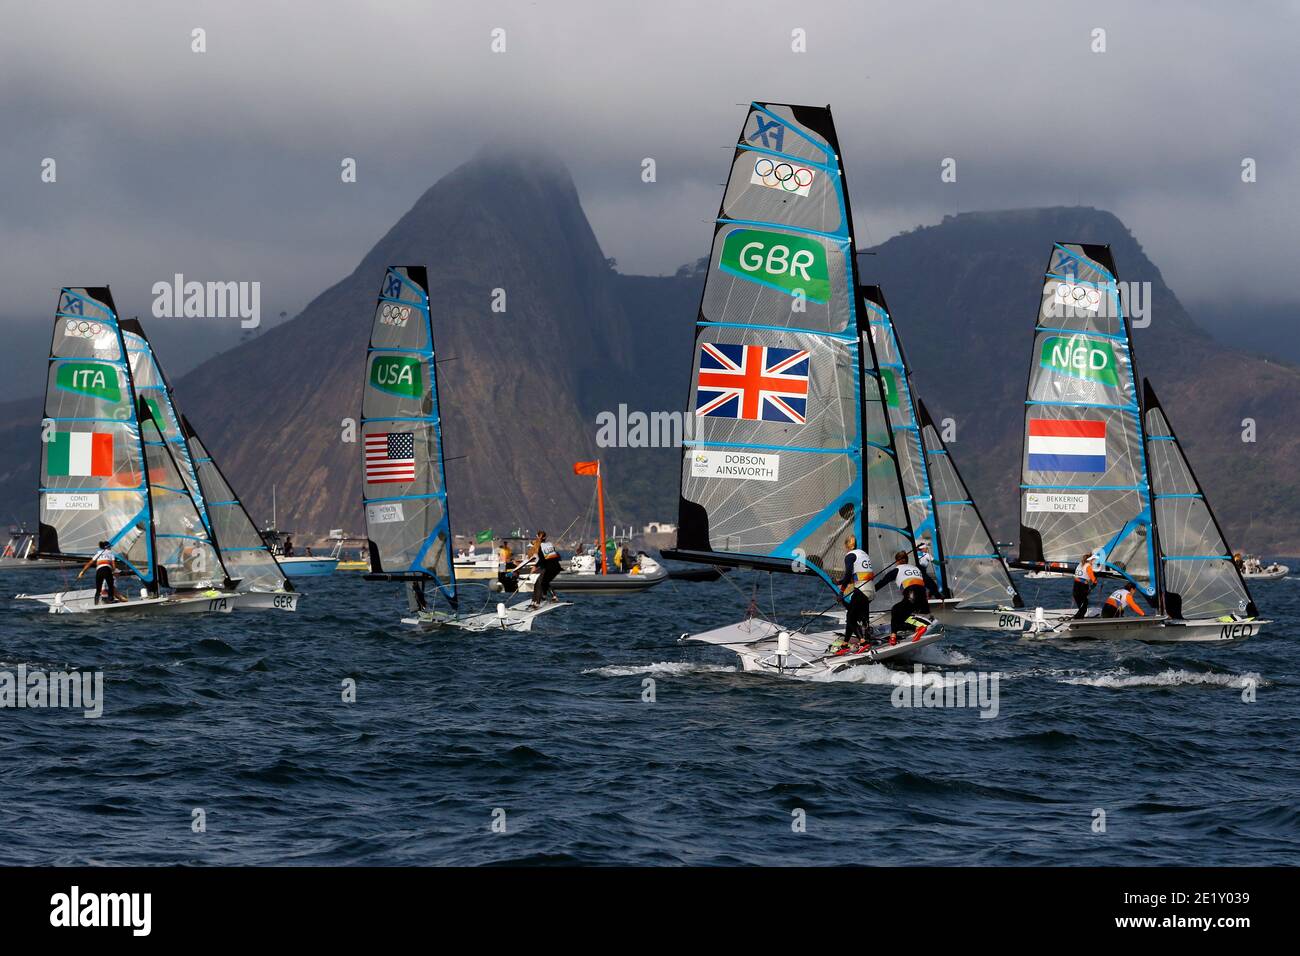 Segeln bei den Olympischen Spielen 2016 in Rio. USA, Niederlande, Großbritannien und Italien Damen 49er FX Klasse Skiff Segelbootteams bei Rennen Start in Guanabara Bucht Stockfoto